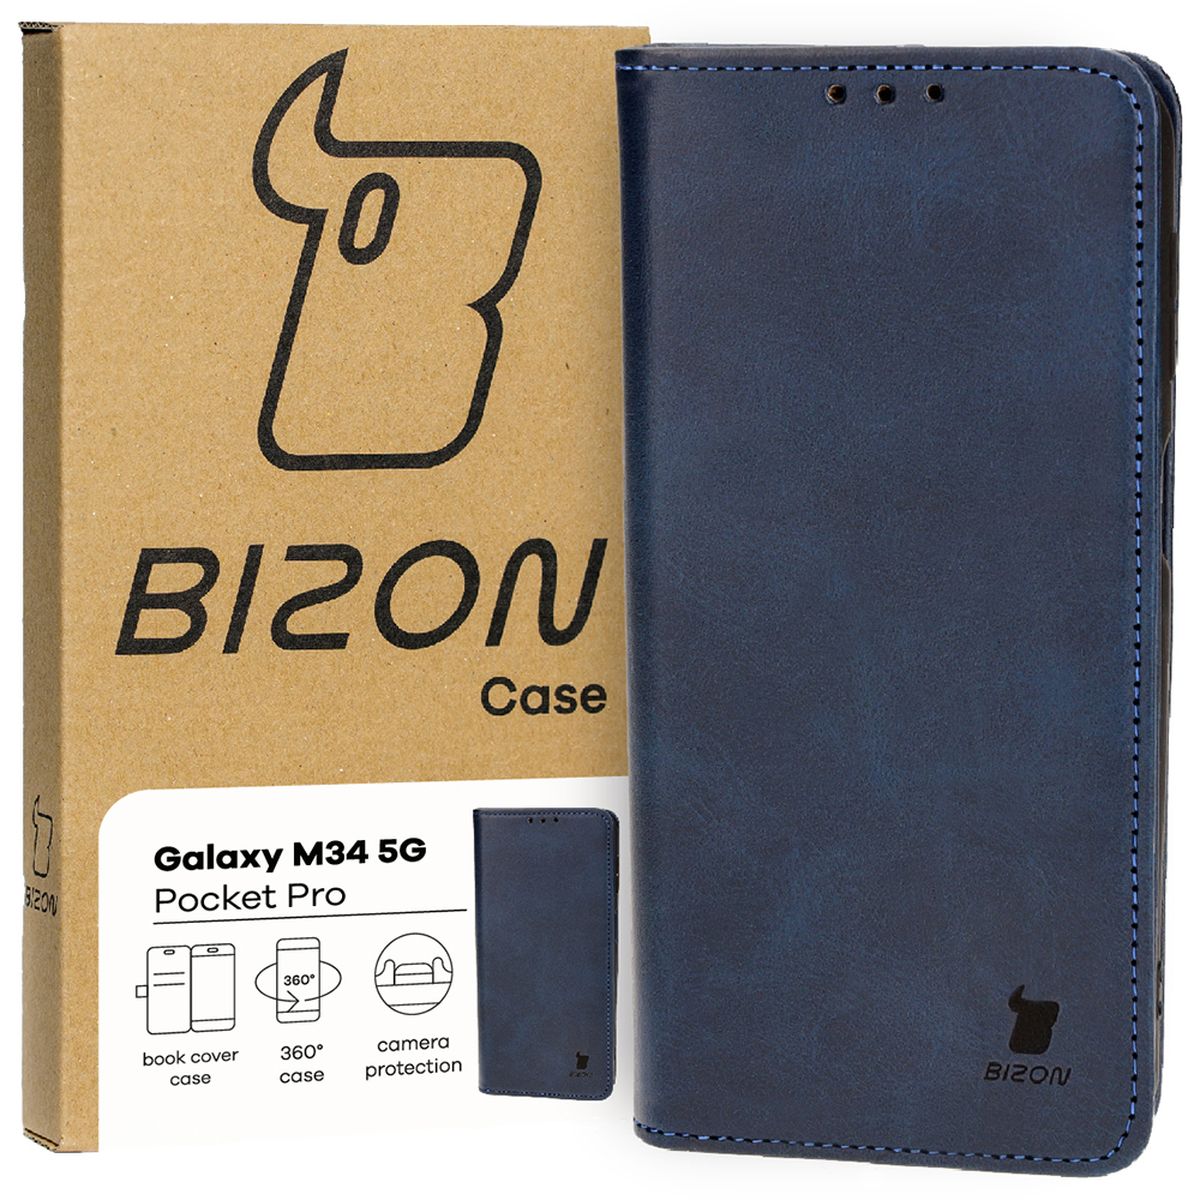 Schutzhülle Bizon Case Pocket Pro für Samsung Galaxy M34 5G, Dunkelblau